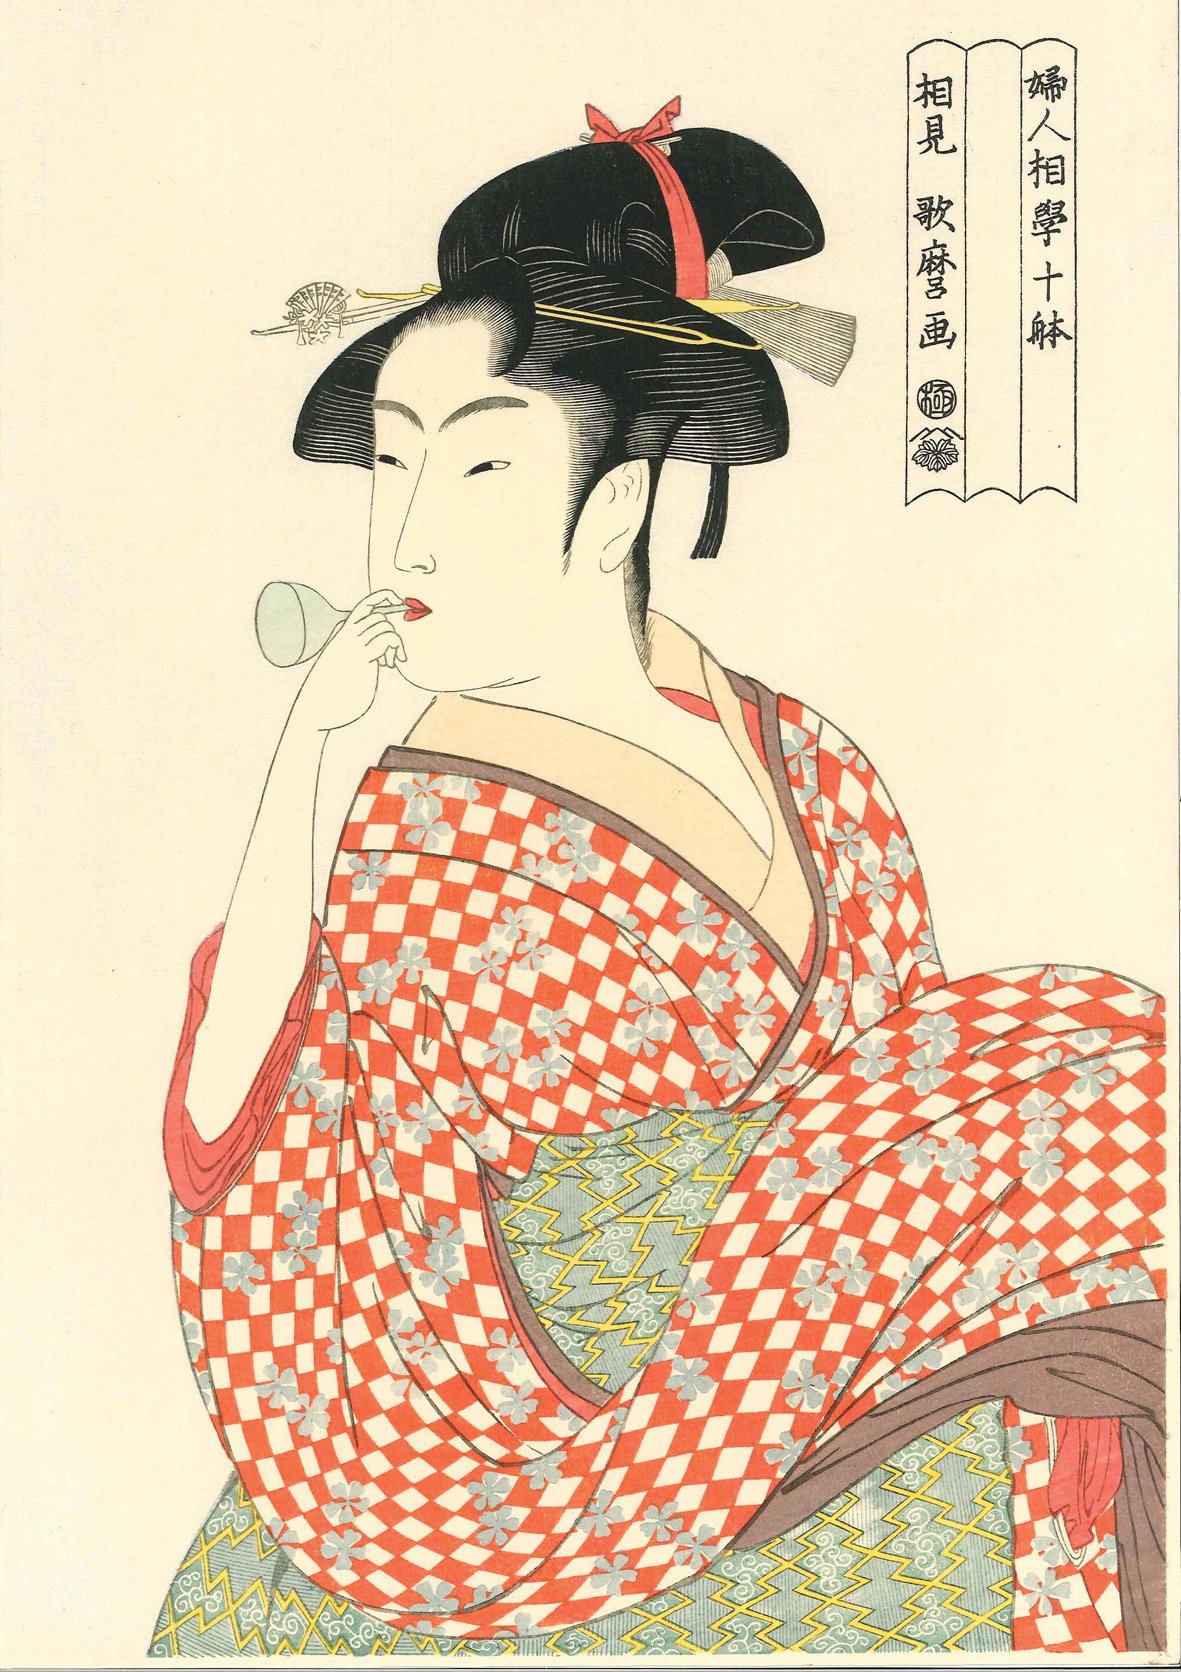 喜多川歌麿作「ビードロを吹く女」（復刻版）。赤い市松模様の着物が印象的